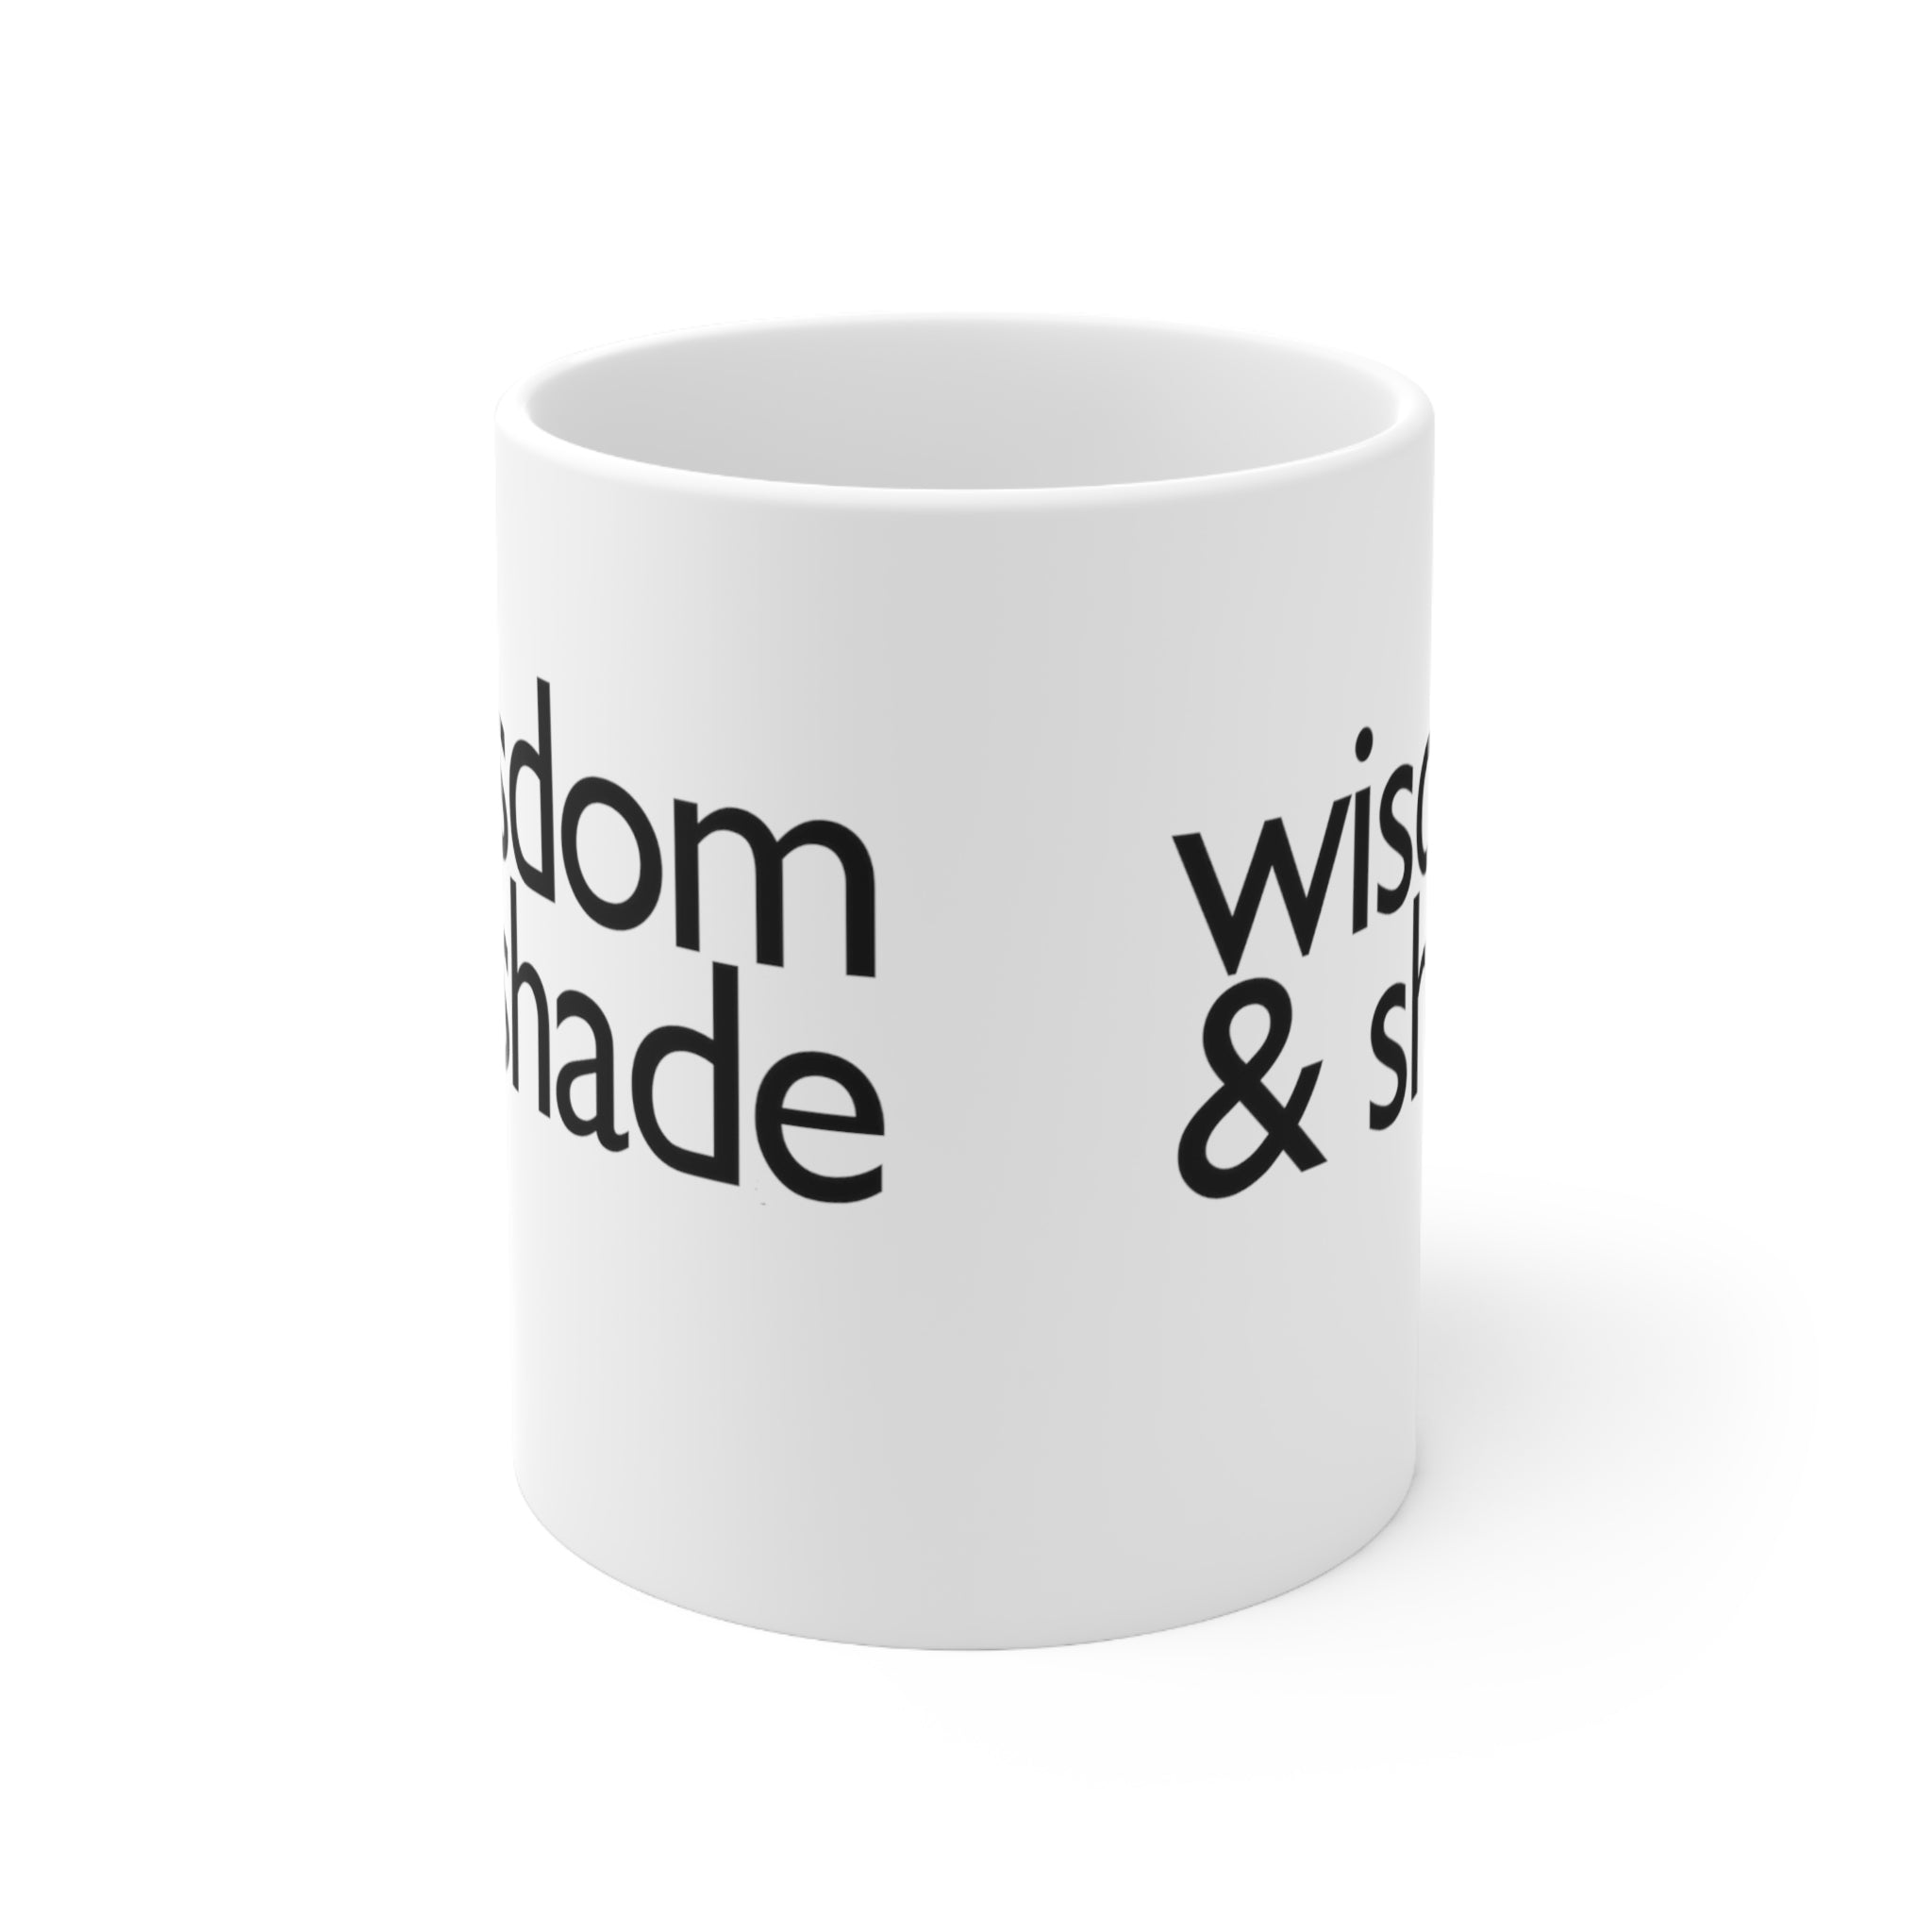 Wisdom & Shade Mug 11oz (White/Black)-Mug-The Original God Ain't Petty But I Am